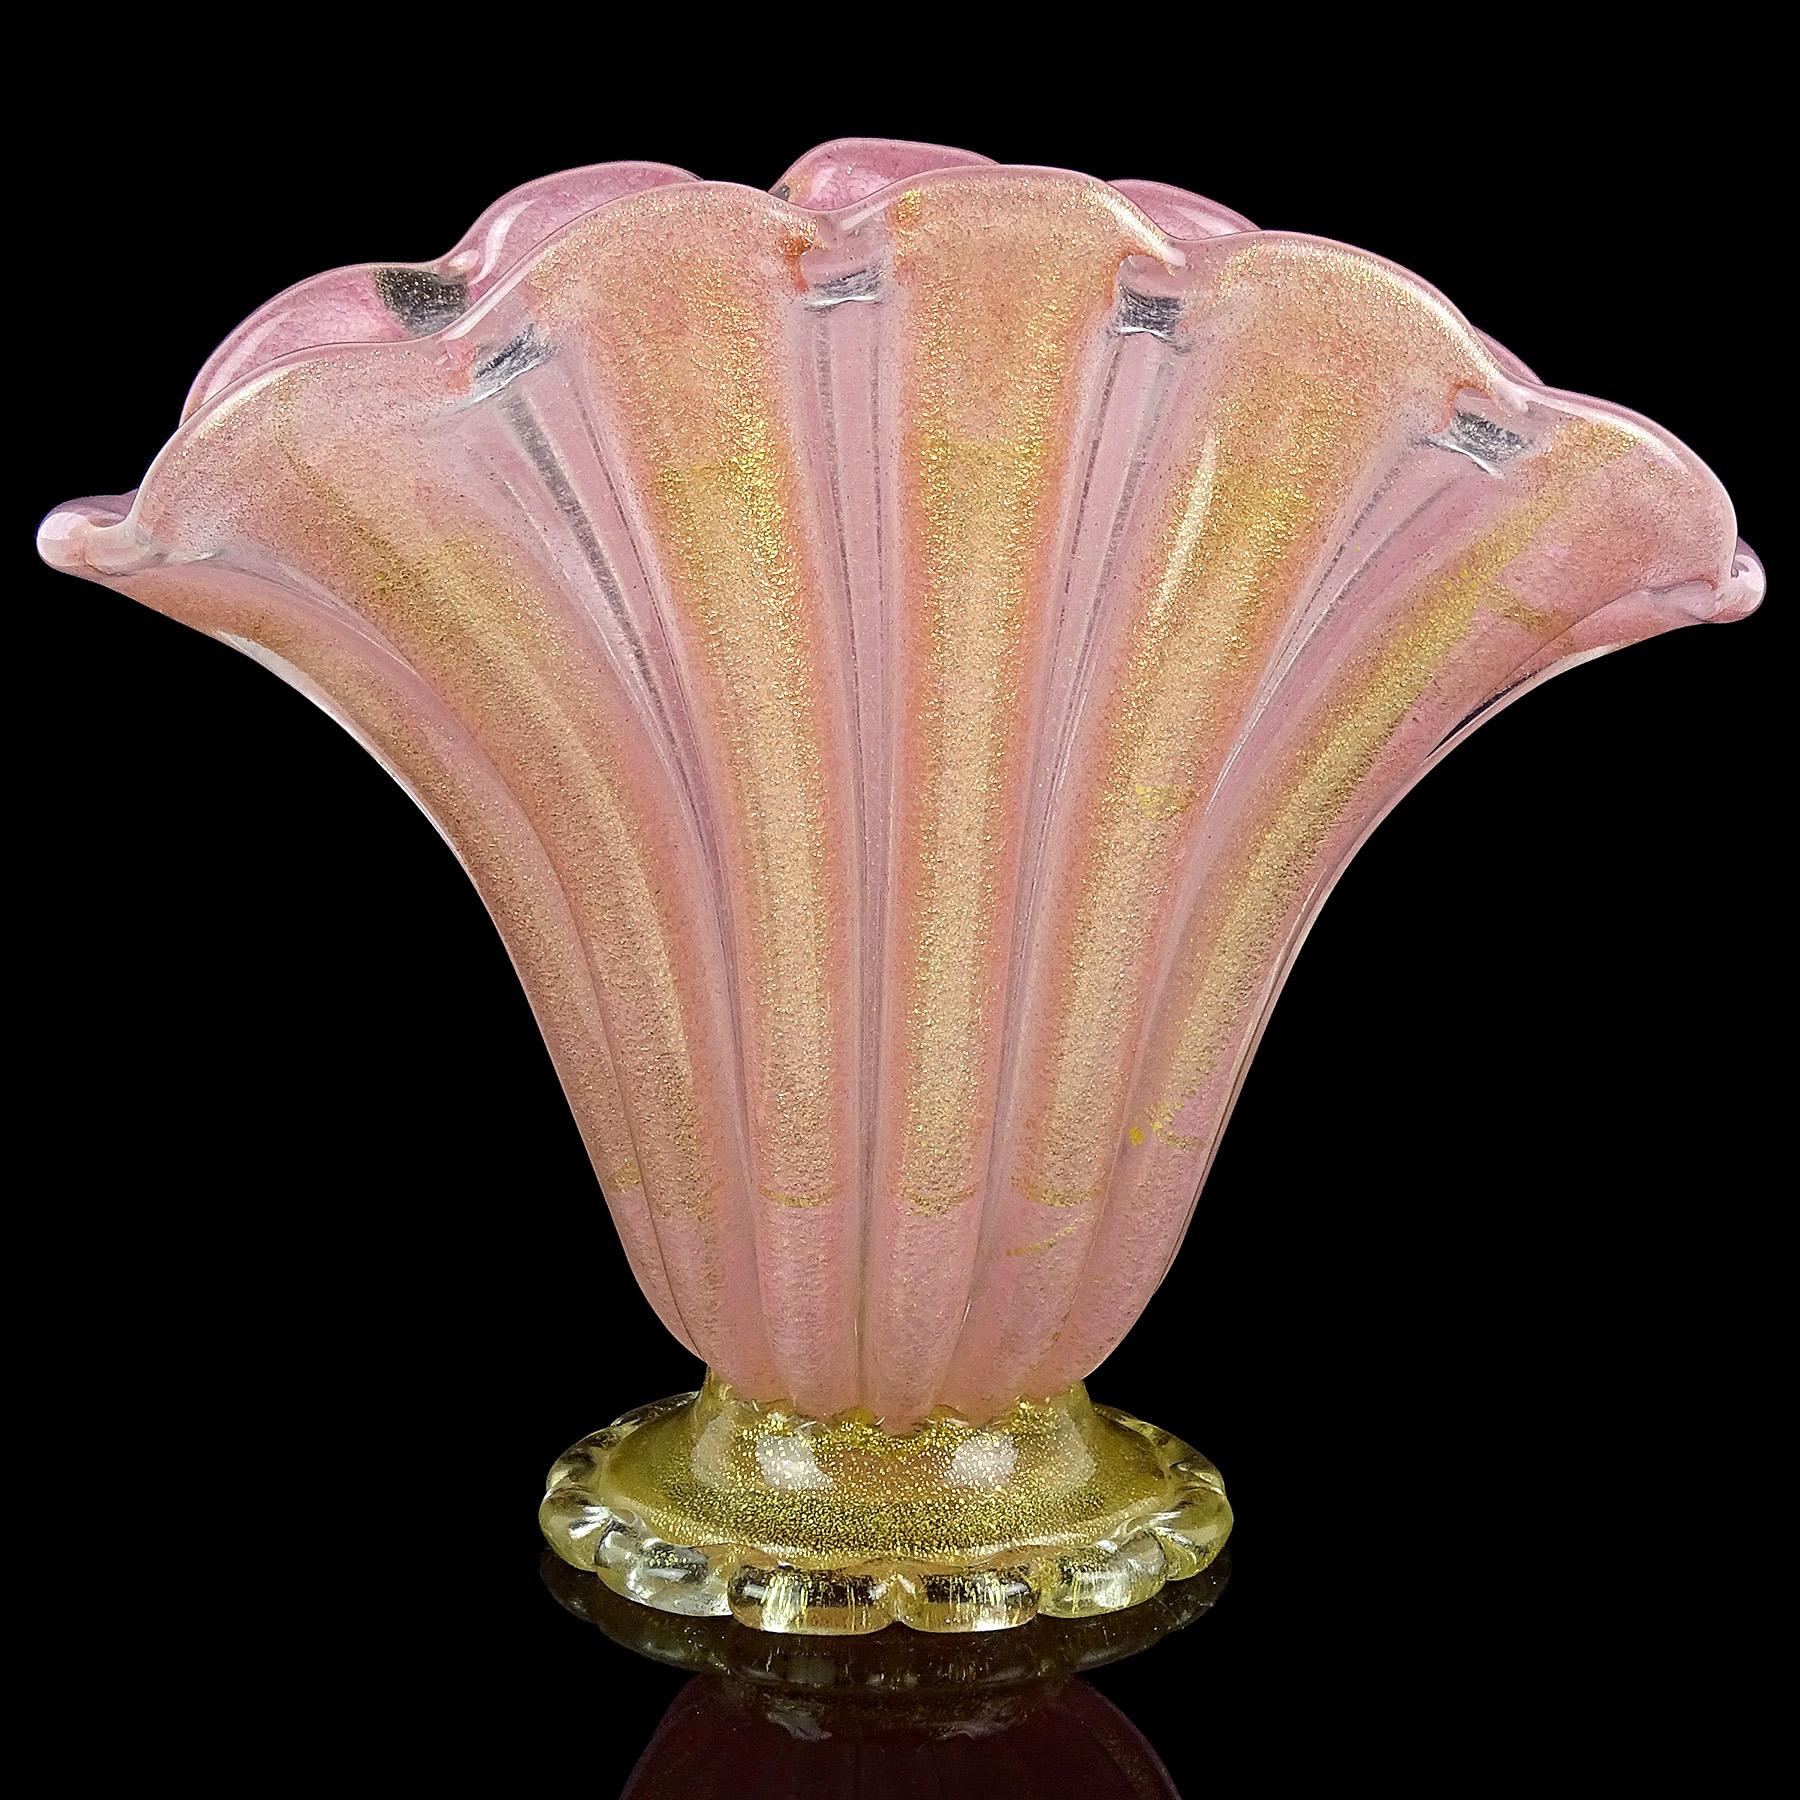 Gorgeous Vintage Murano mundgeblasenen rosa und goldenen Flecken italienischen Kunstglas fußte fächerförmige Blumenvase. Wird dem Designer Ercole Barovier für das Atelier Barovier e Toso zugeschrieben. Erstellt im Stil von 